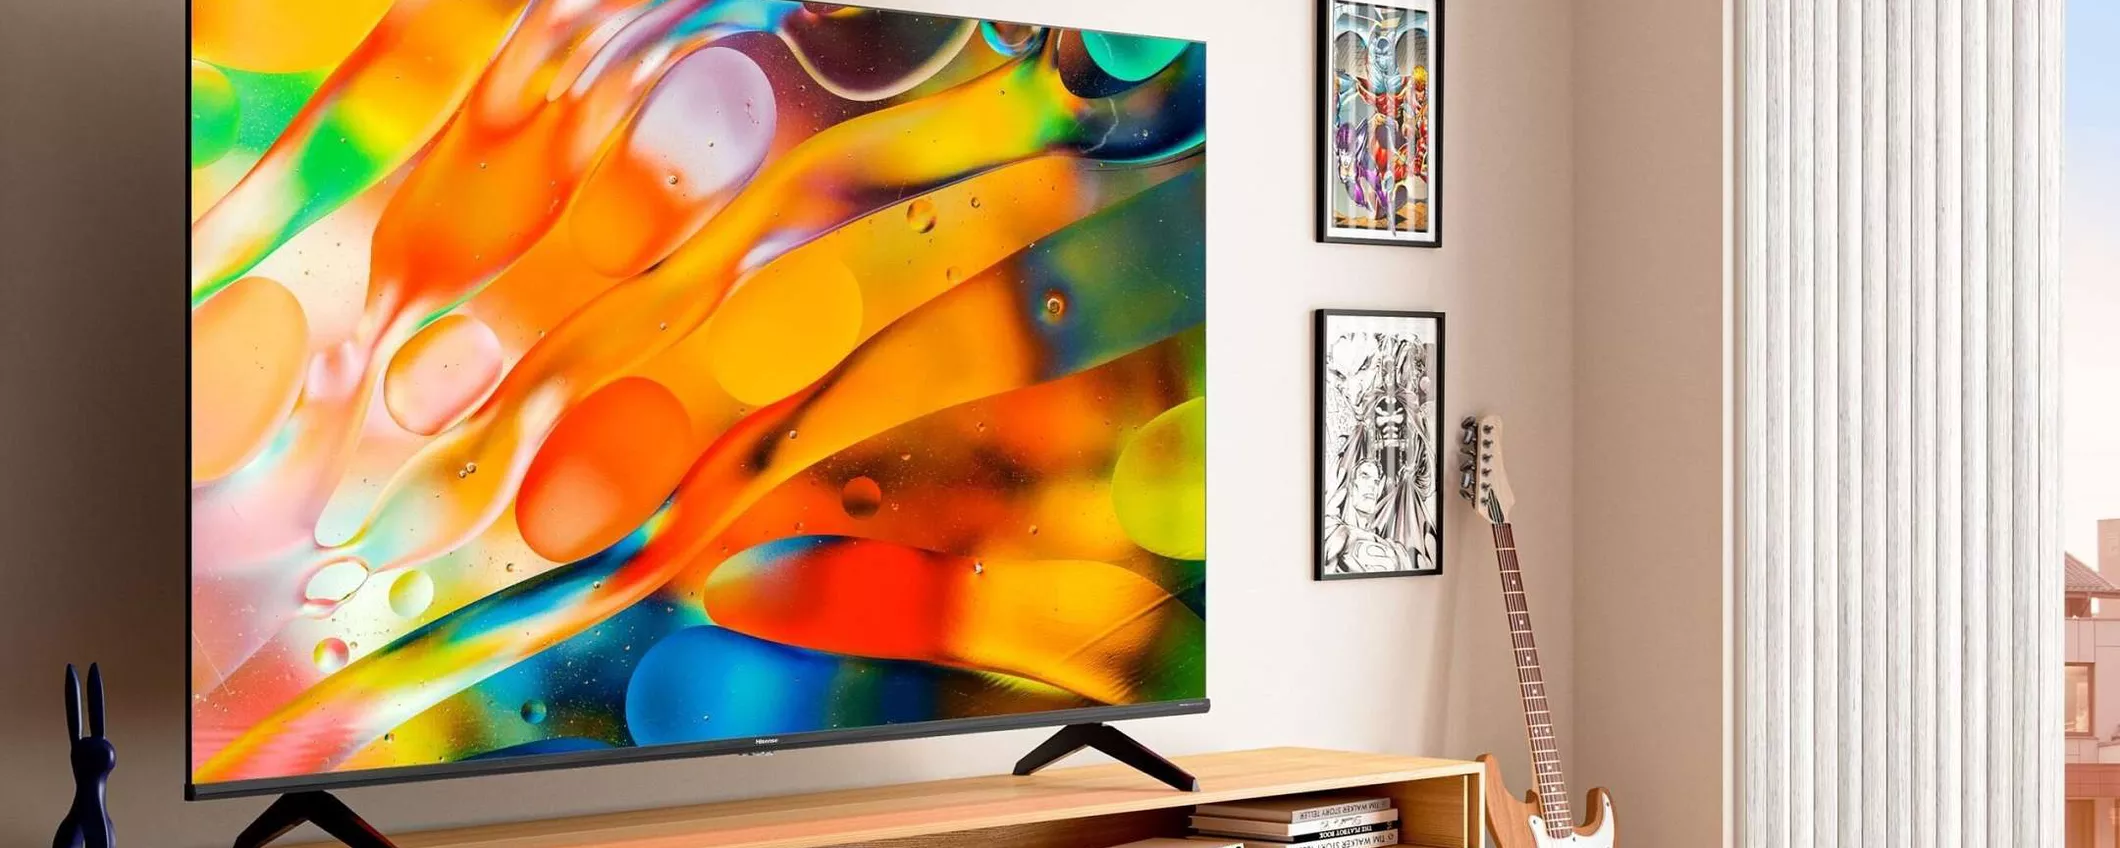 Questo TV QLED da 50 pollici costa solo 349€ su Amazon: è BEST BUY